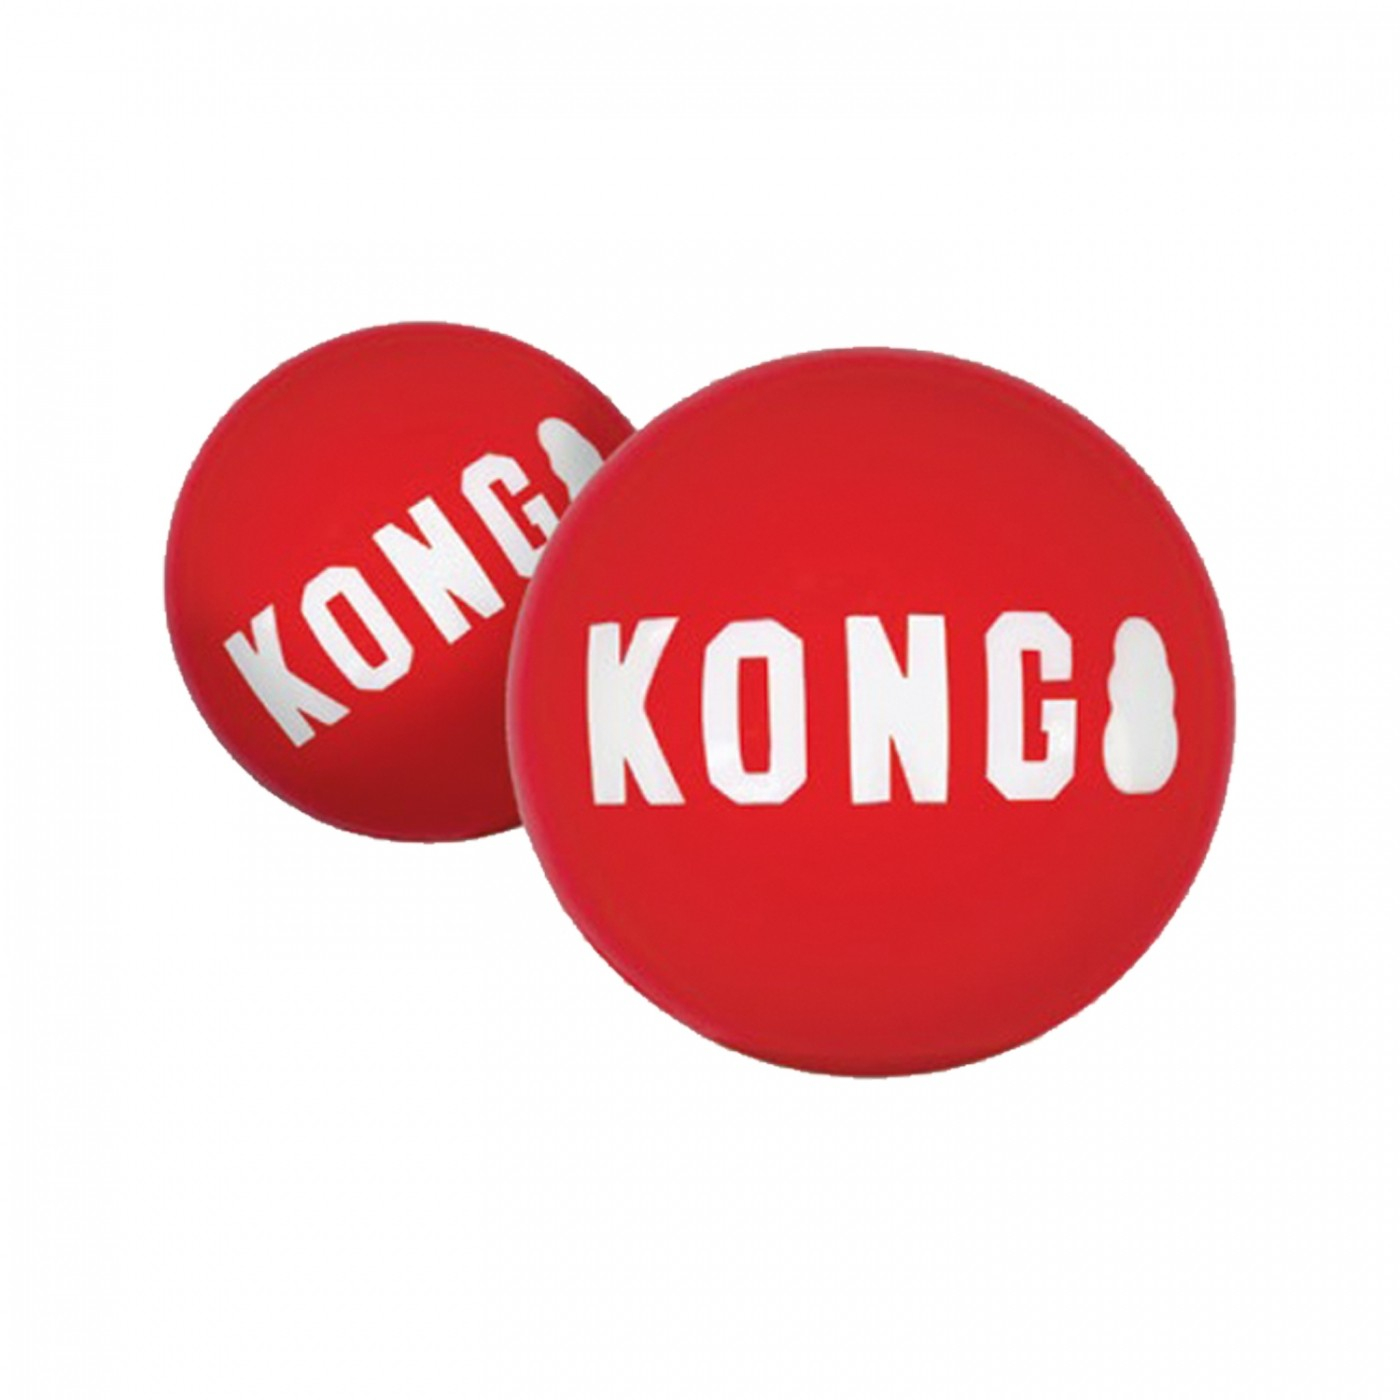 Bola para cão Signature KONG Ball - à unidade ou duas unidades